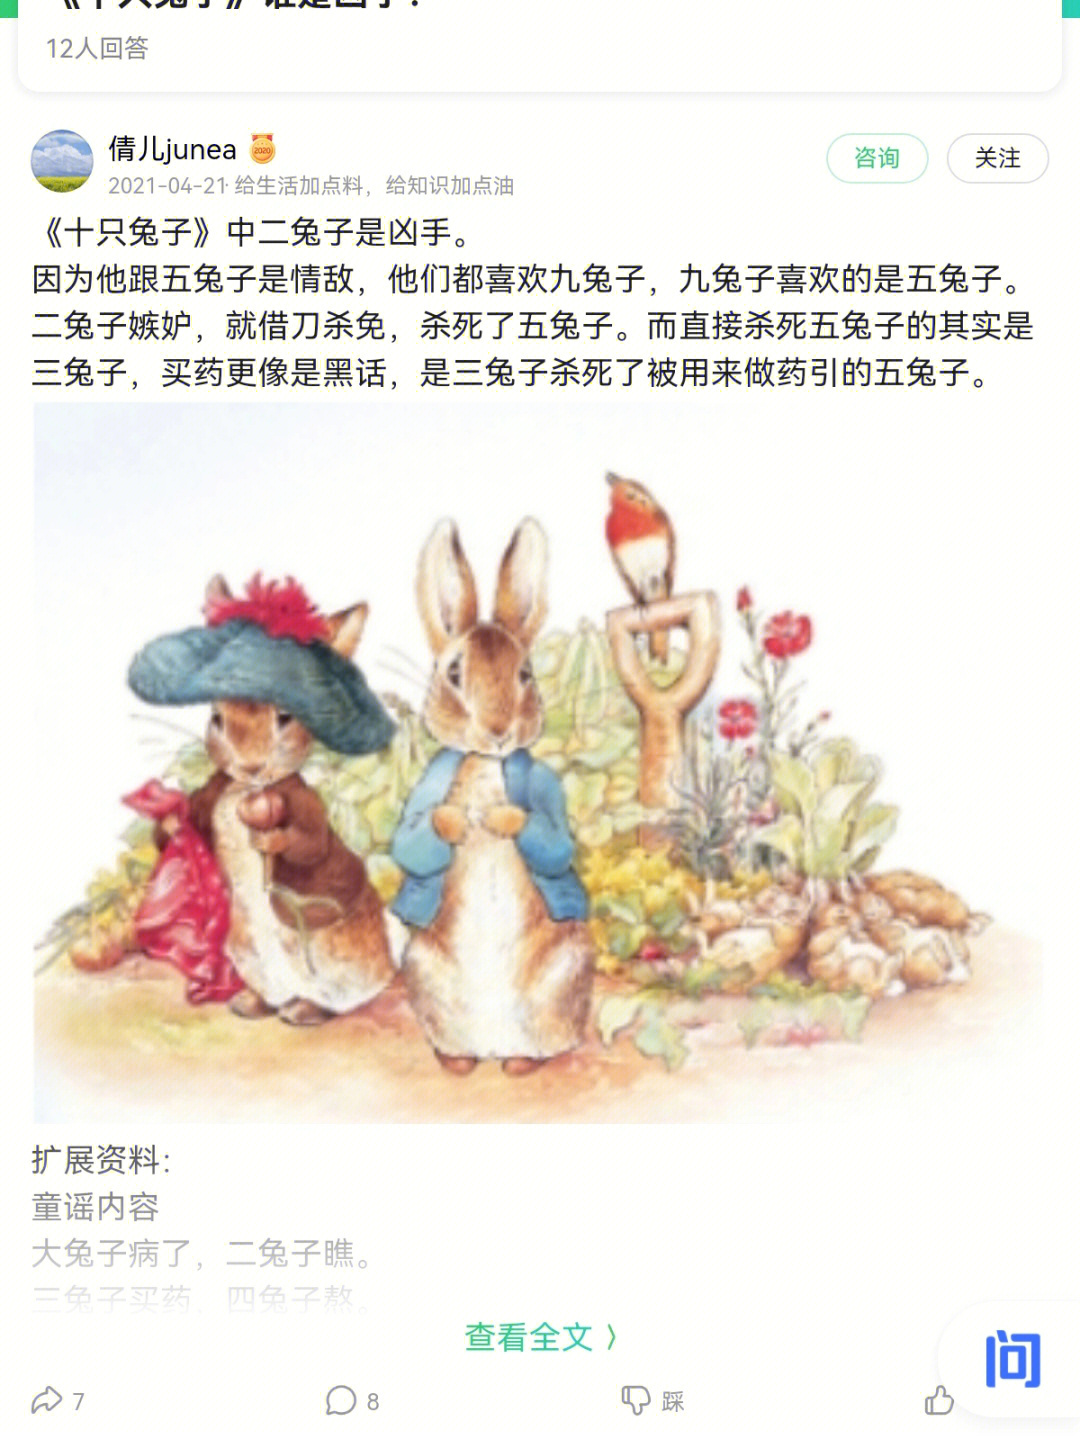 十只兔子数字简谱图片